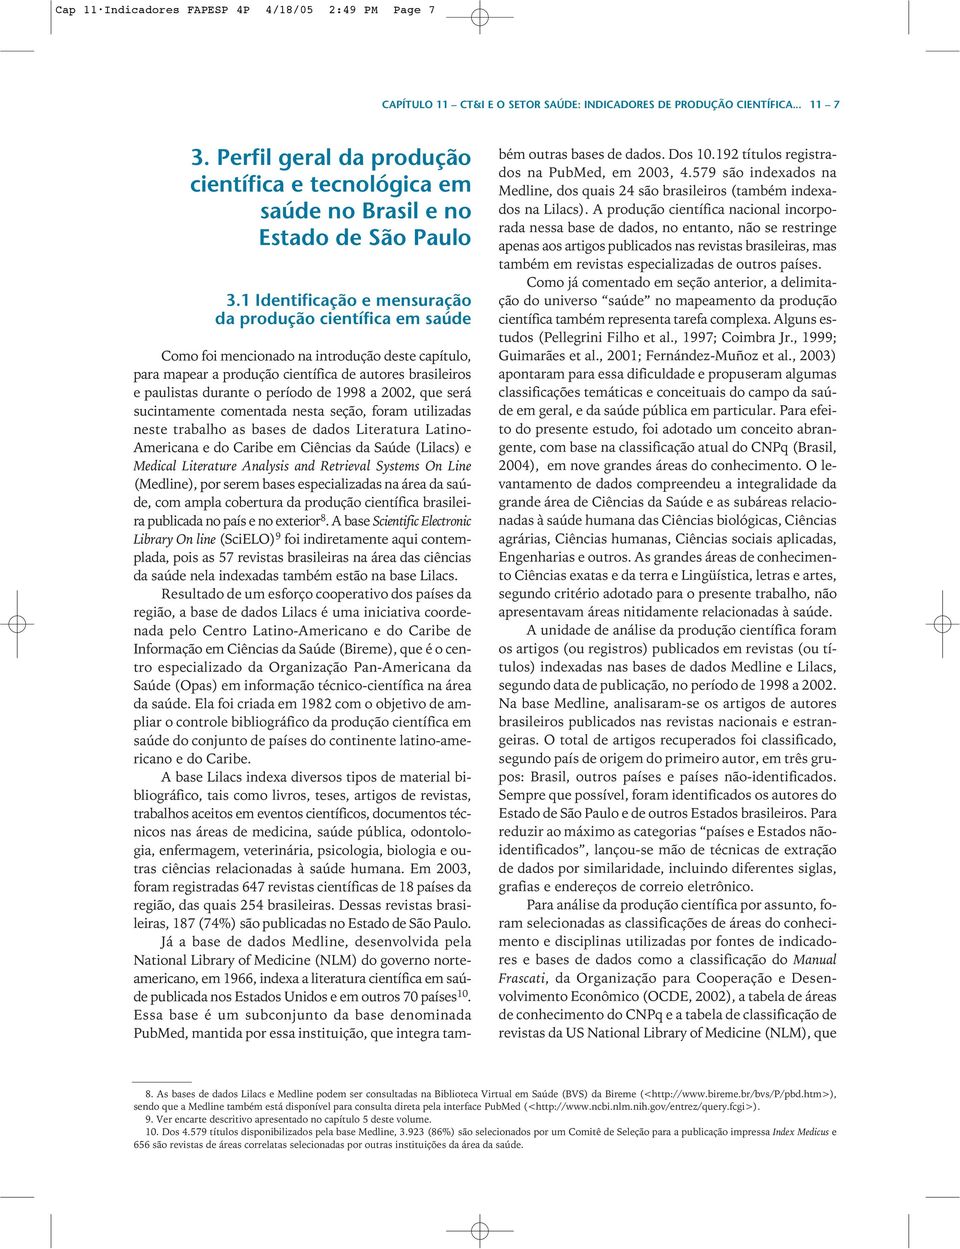 1 Identificação e mensuração da produção científica em saúde Como foi mencionado na introdução deste capítulo, para mapear a produção científica de autores brasileiros e paulistas durante o período